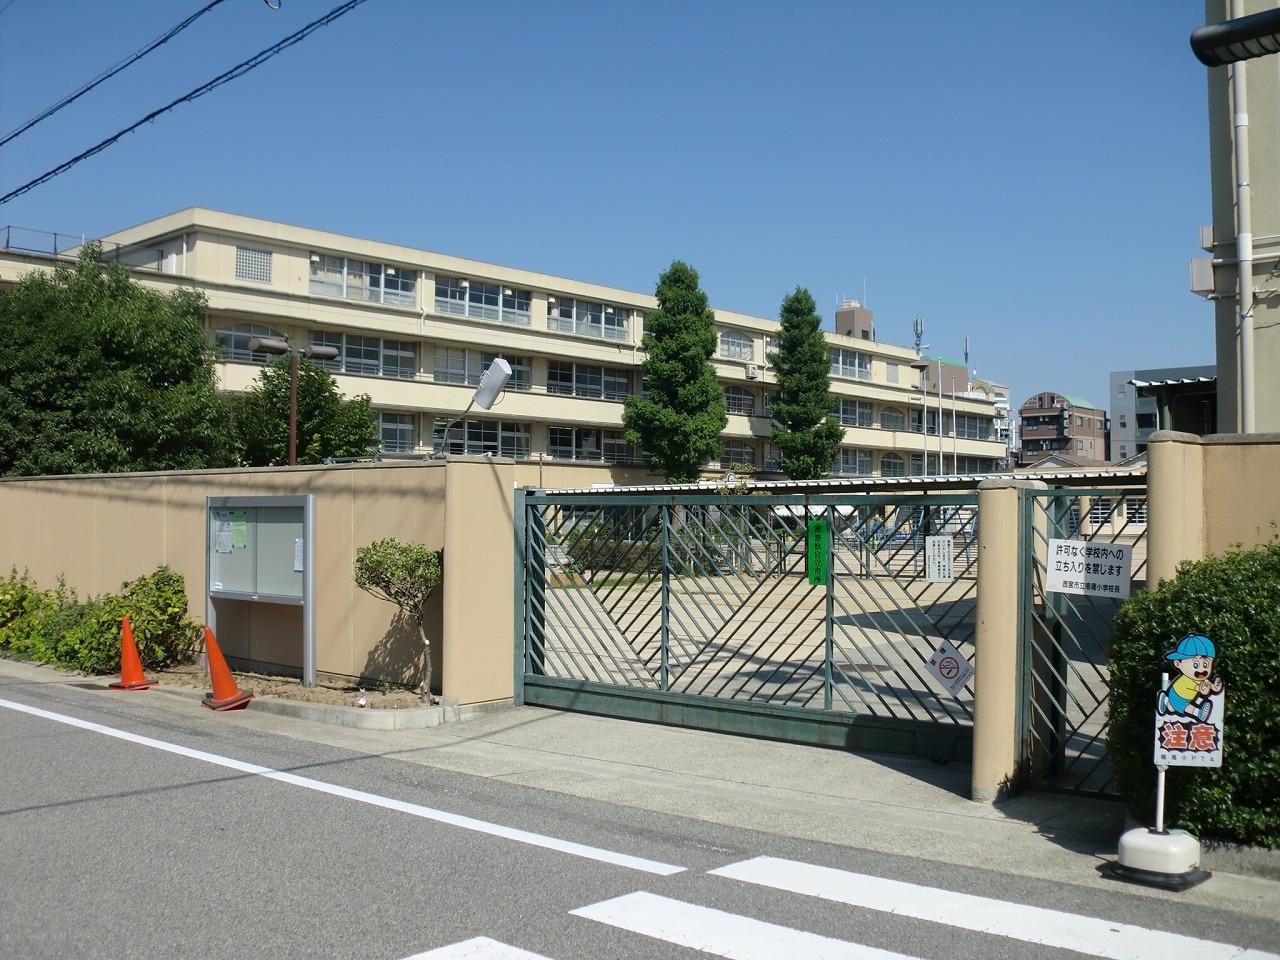 Primary school. 107m to Nishinomiya Municipal Naruo elementary school (elementary school)